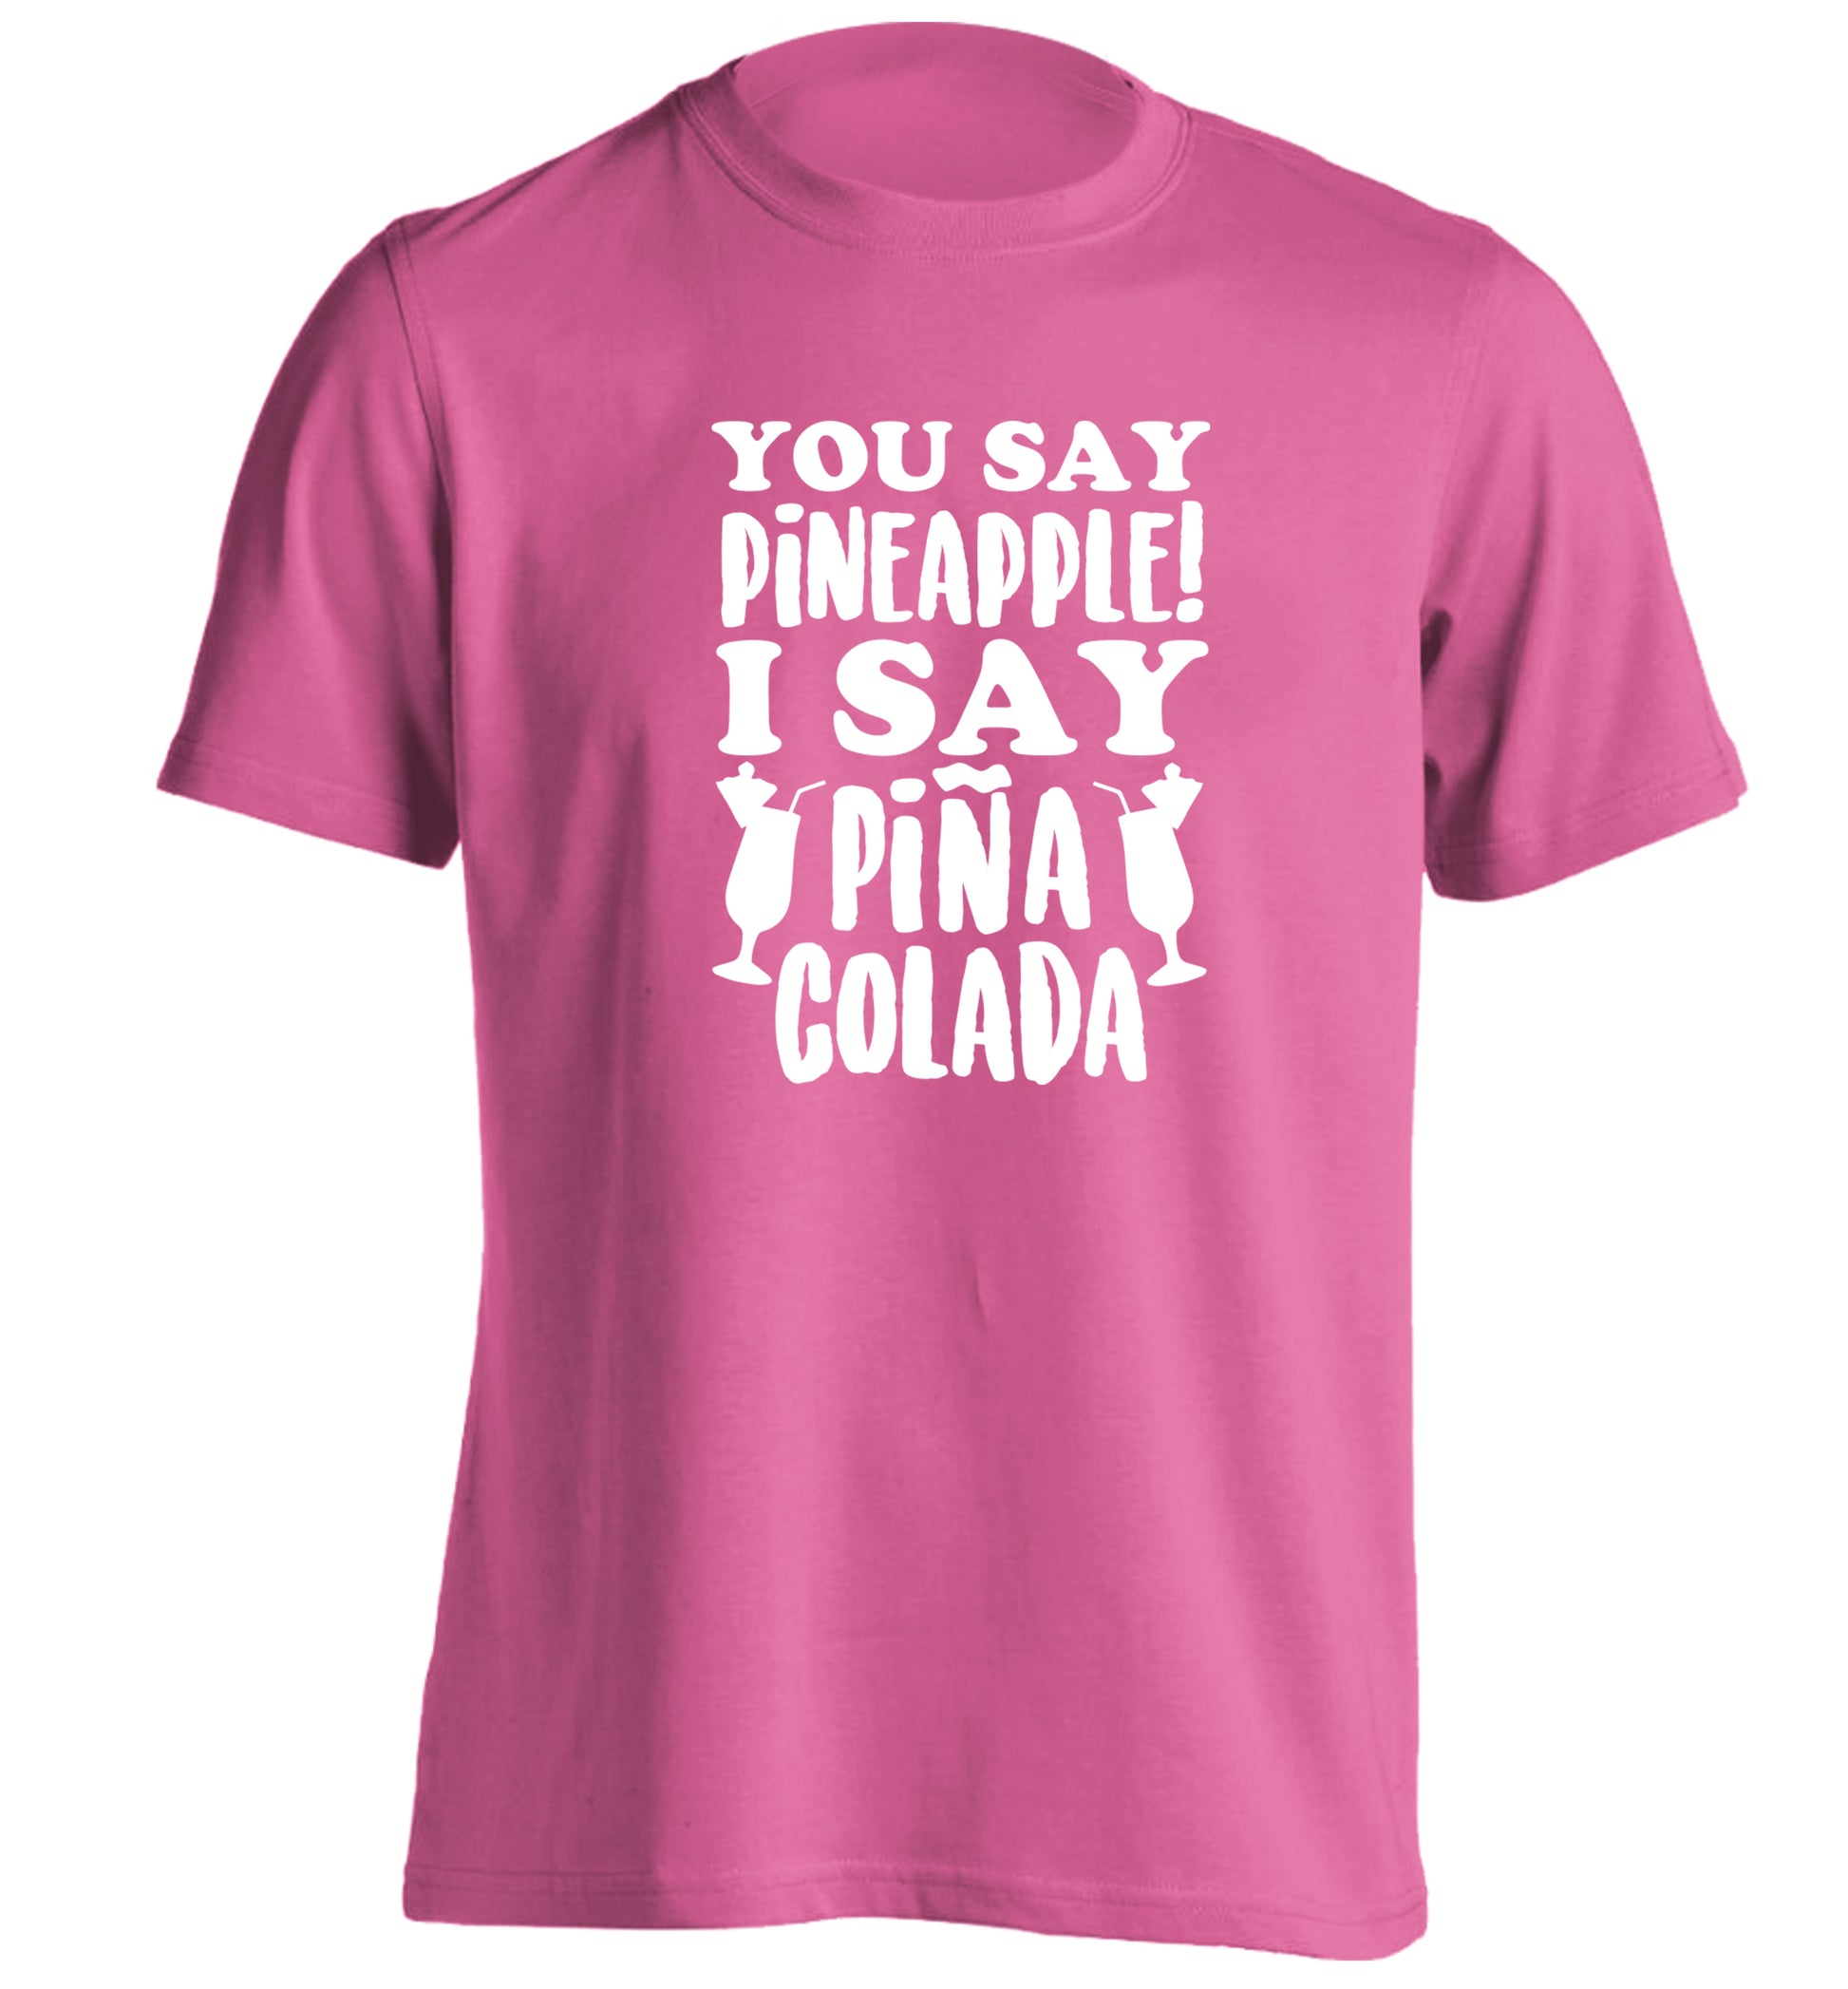 You say pinapple I say Pina colada adults unisex pink Tshirt 2XL